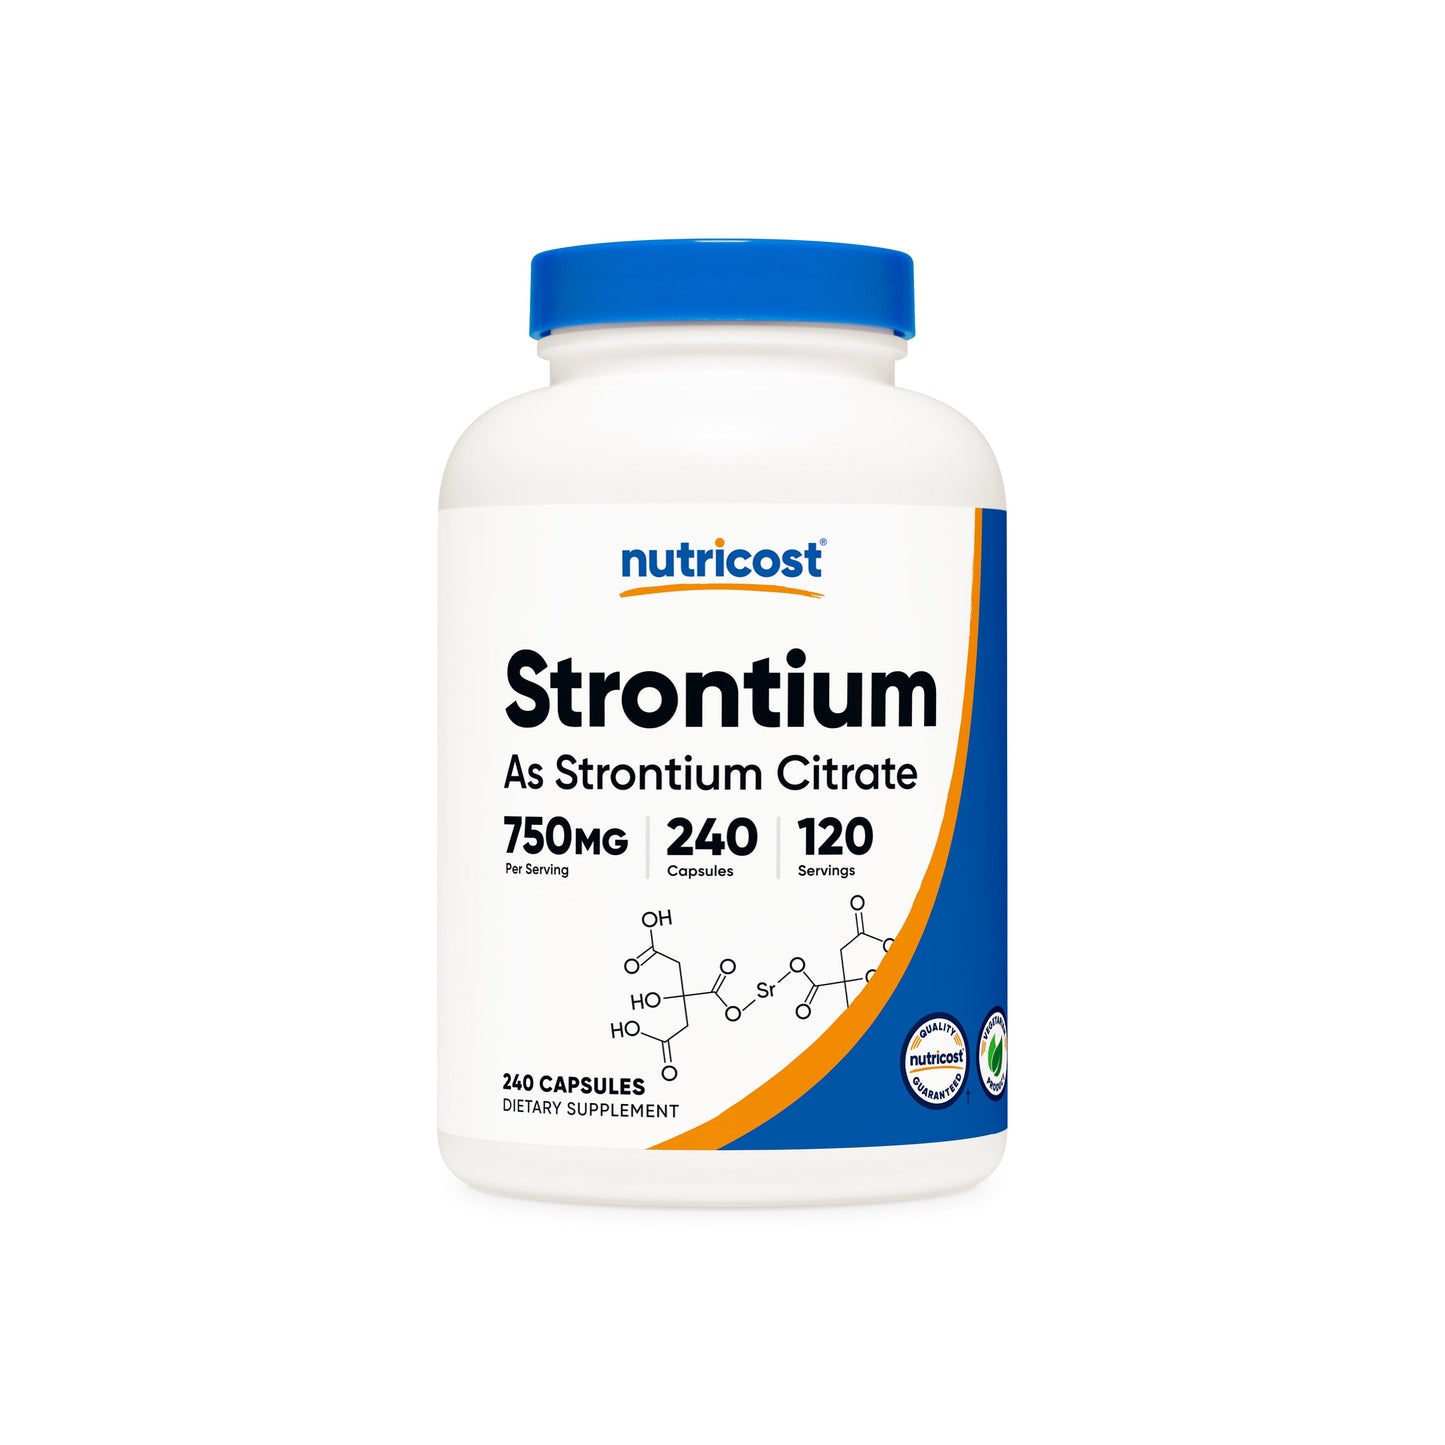 Nutricost Strontium Capsules